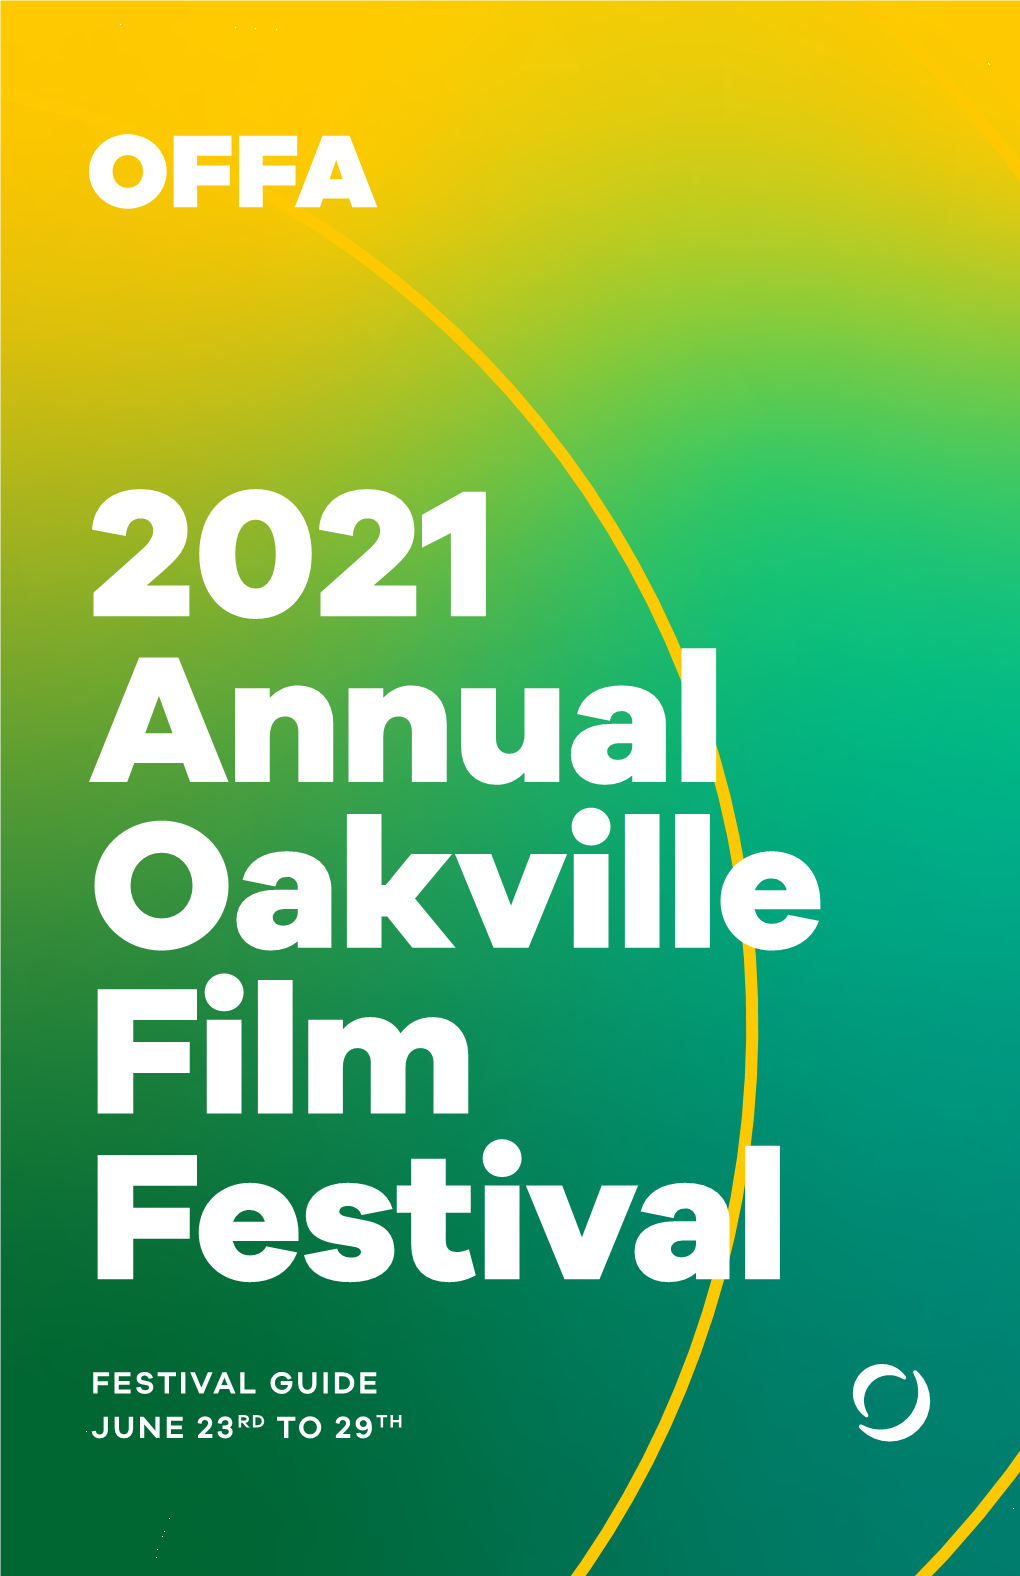 Festival Guide June 23Rd to 29Th 2021 Annual Oakville Film Festival